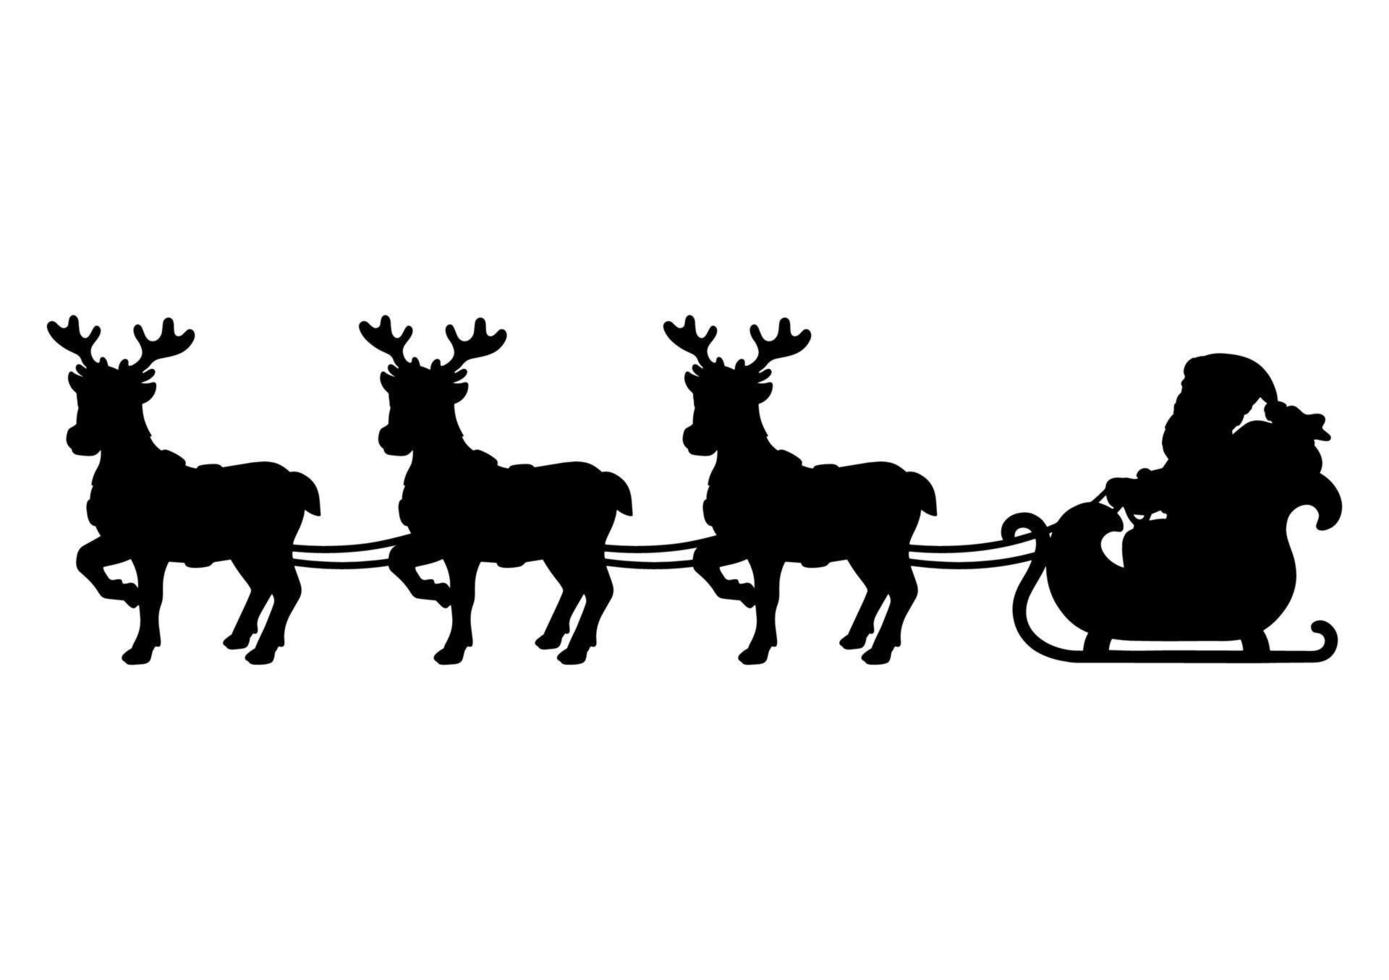 Papai Noel carrega presentes de Natal em um trenó de renas. silhueta negra. elemento de design. ilustração vetorial isolada no fundo branco. modelo para livros, adesivos, cartazes, cartões, roupas. vetor